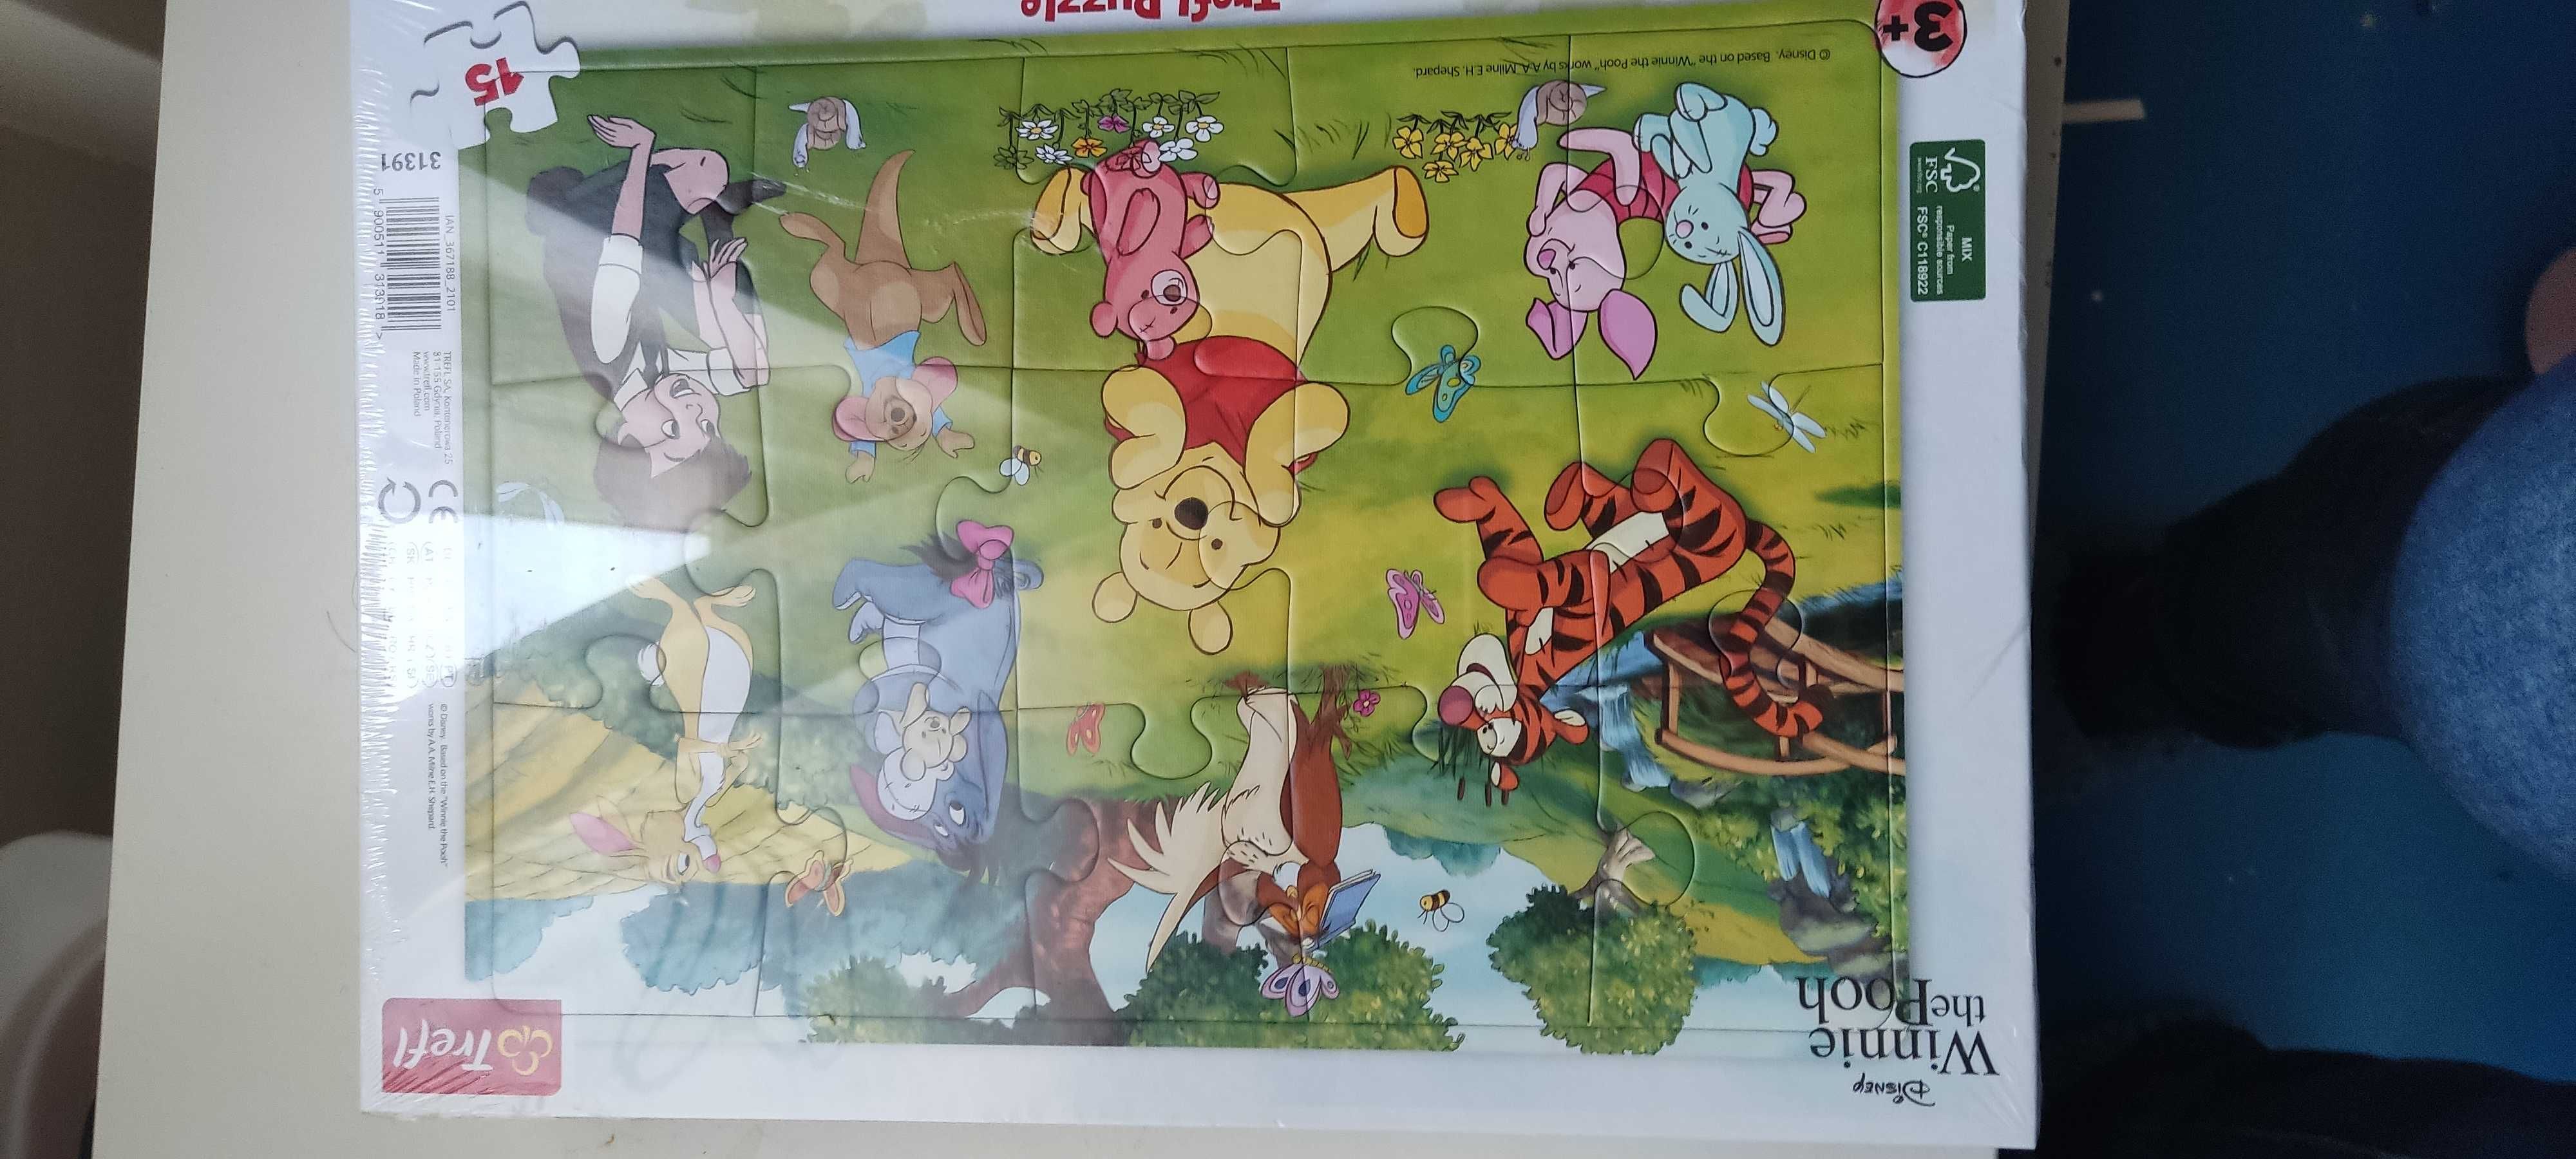 Vários Puzzles criança